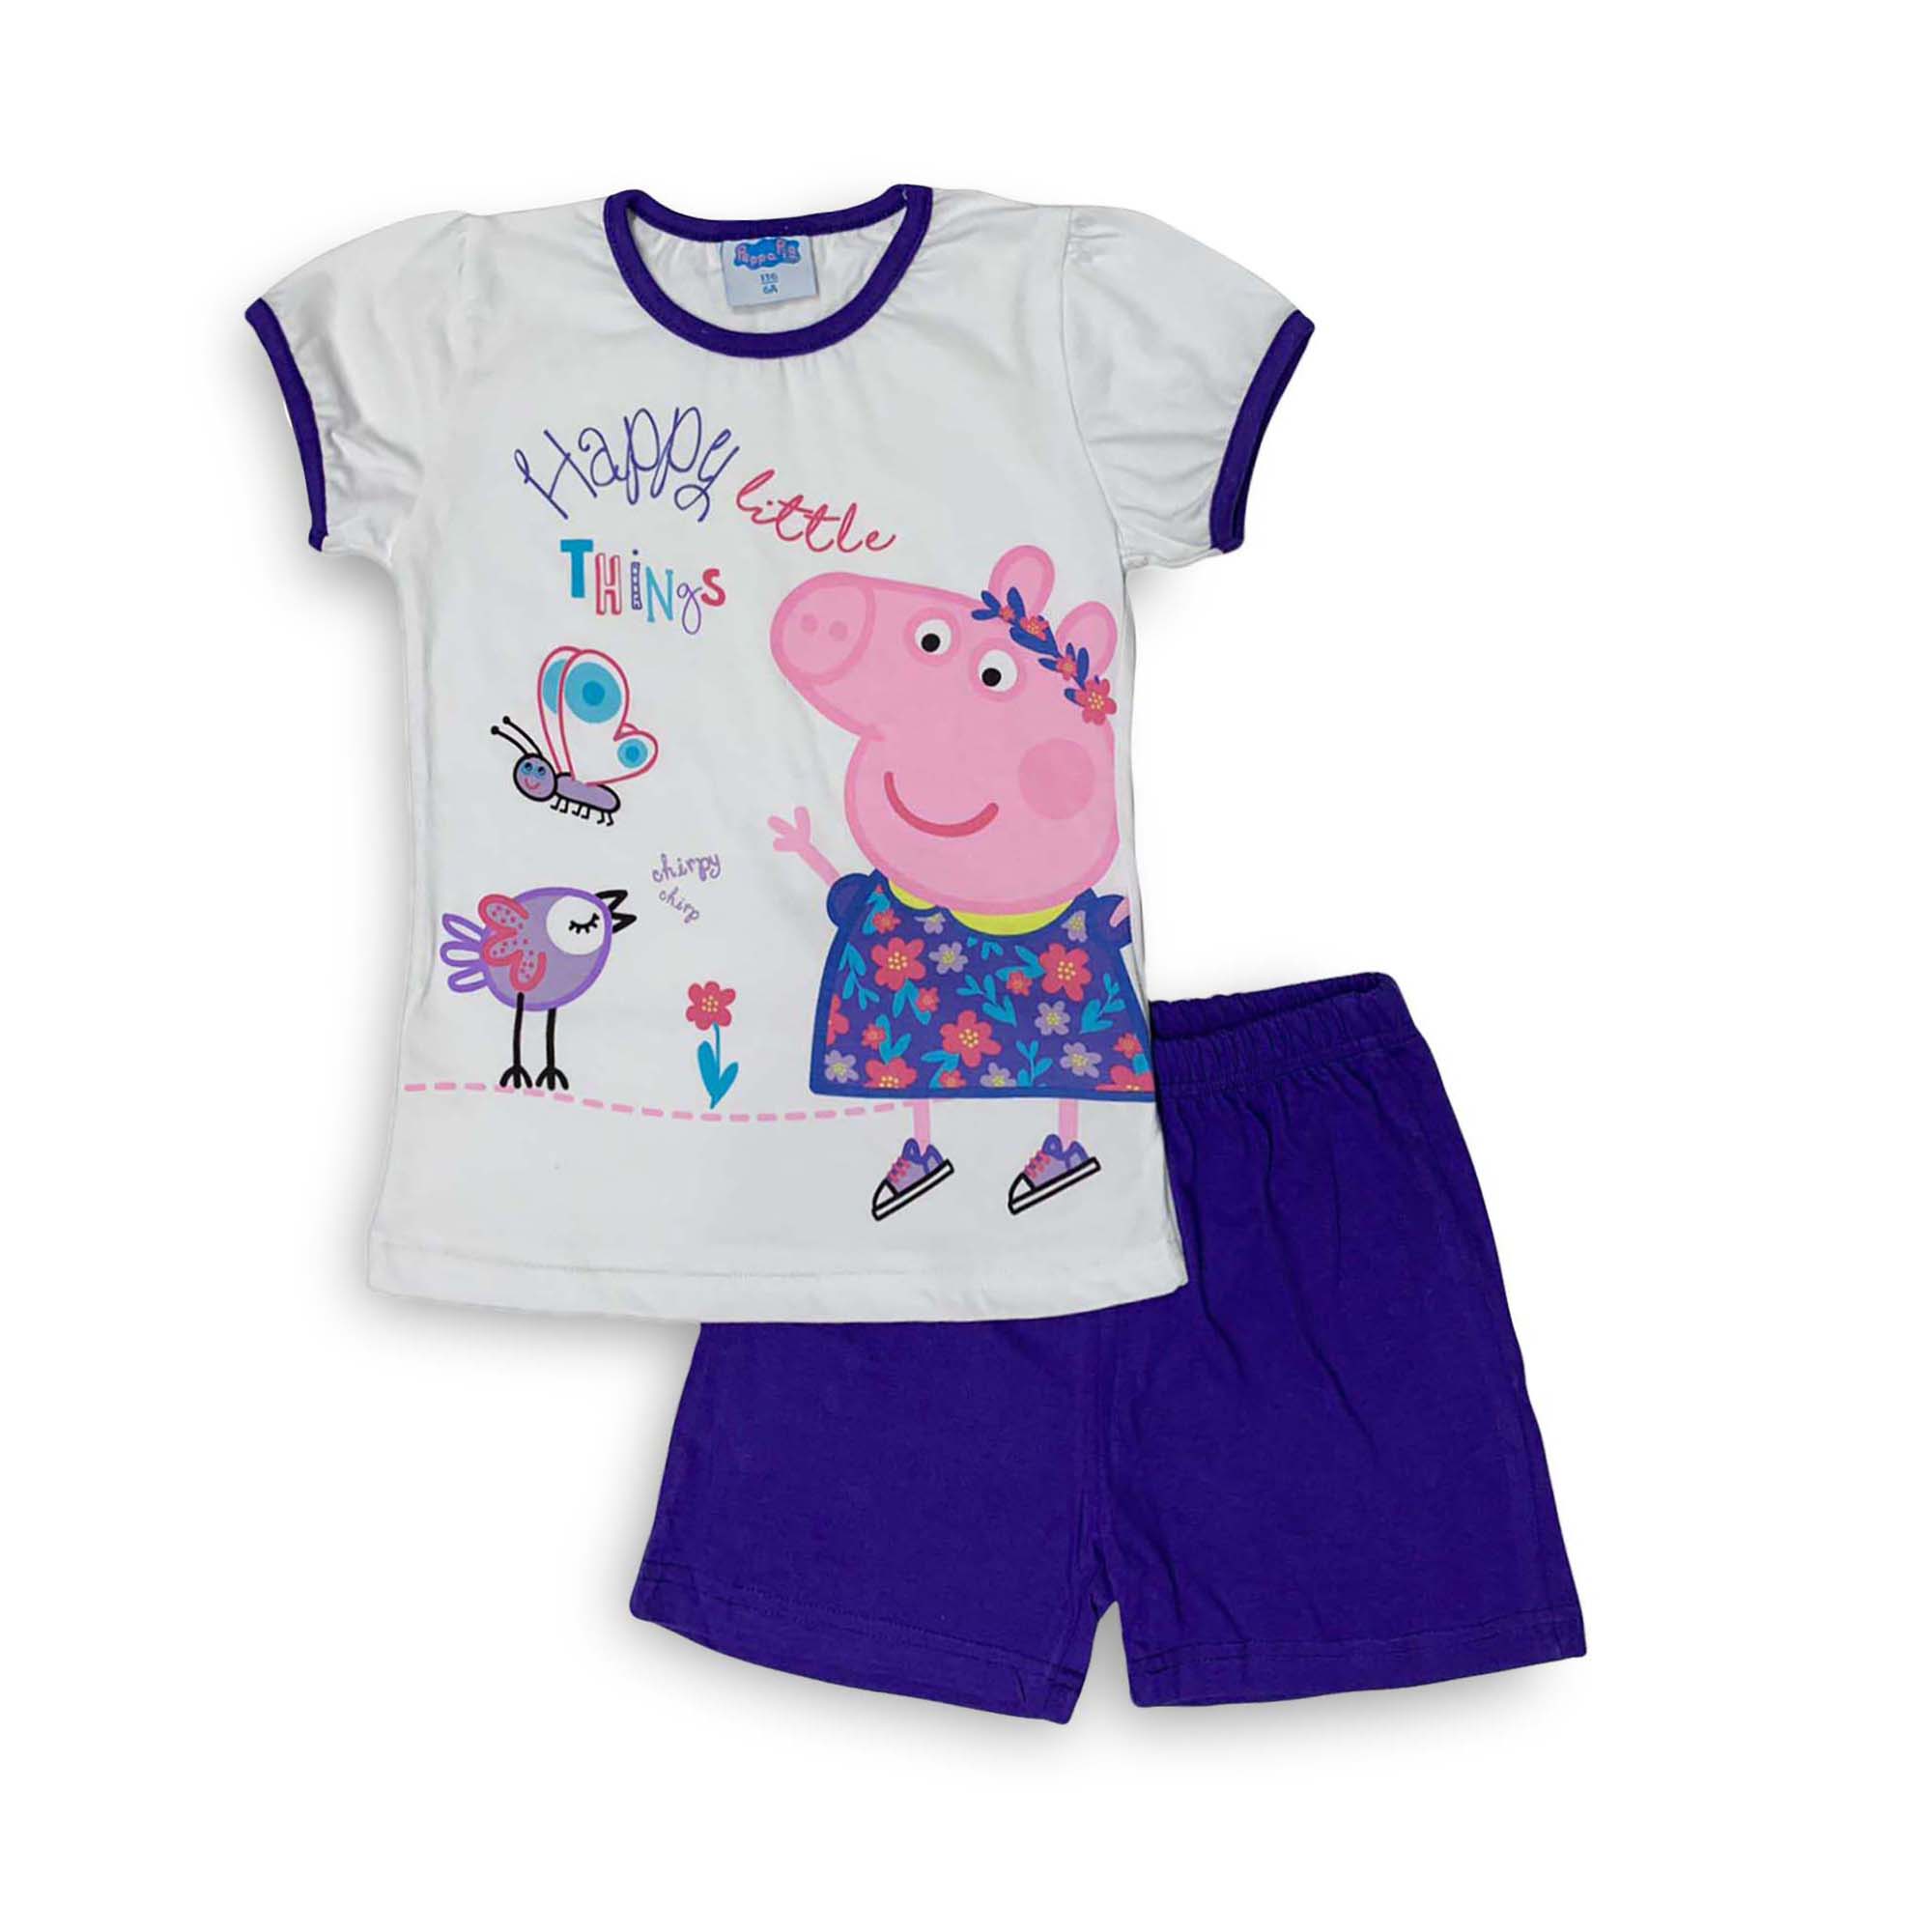 Pigiama corto bambina Peppa Pig completo t-shirt e pantaloncino in cotone 3983